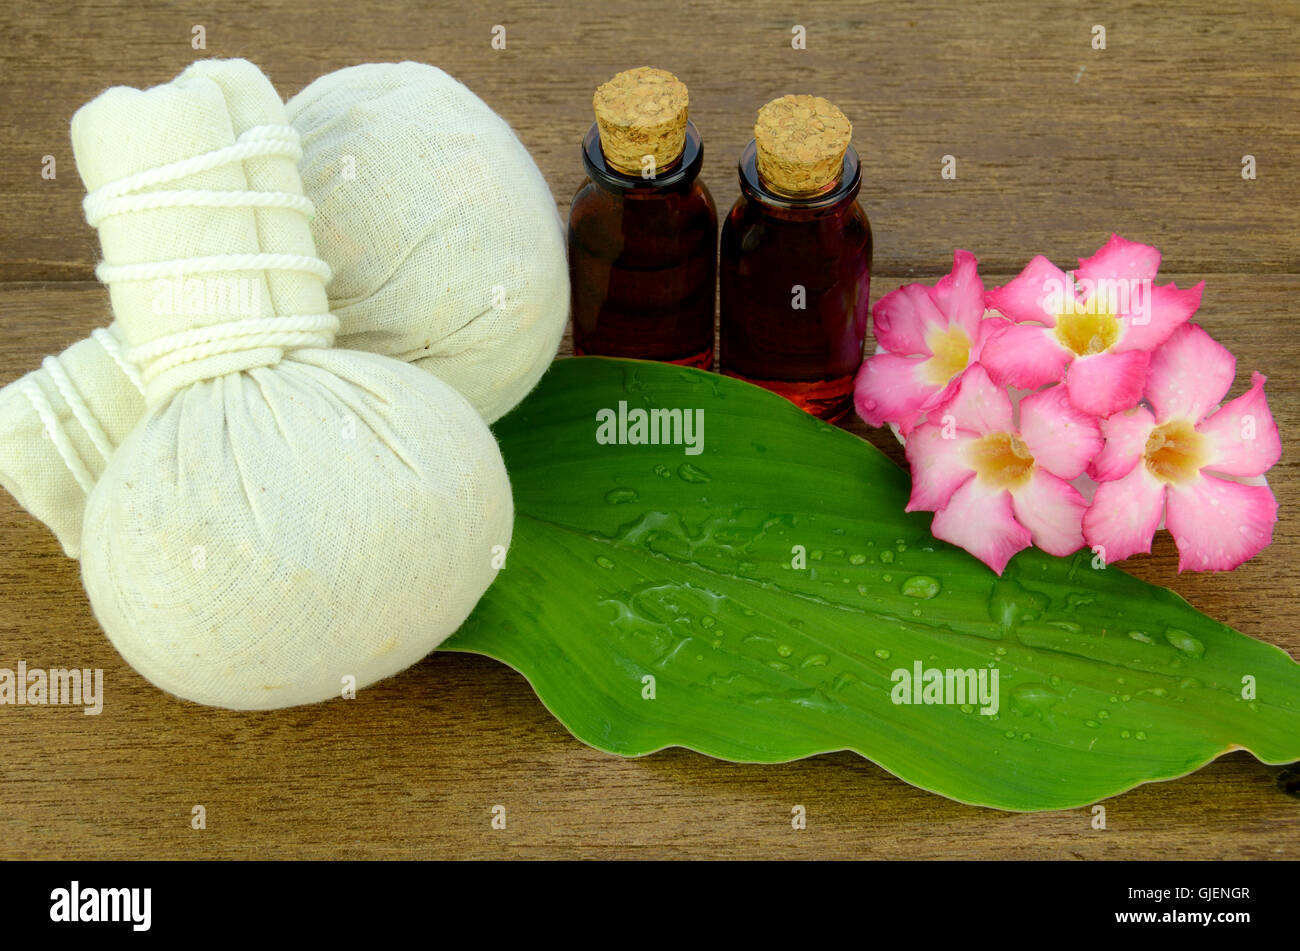 Spa de style thaï avec des herbes médicinales compress ball et l'arôme de l'huile pour détendre les muscles et de traitement de la peau. Banque D'Images